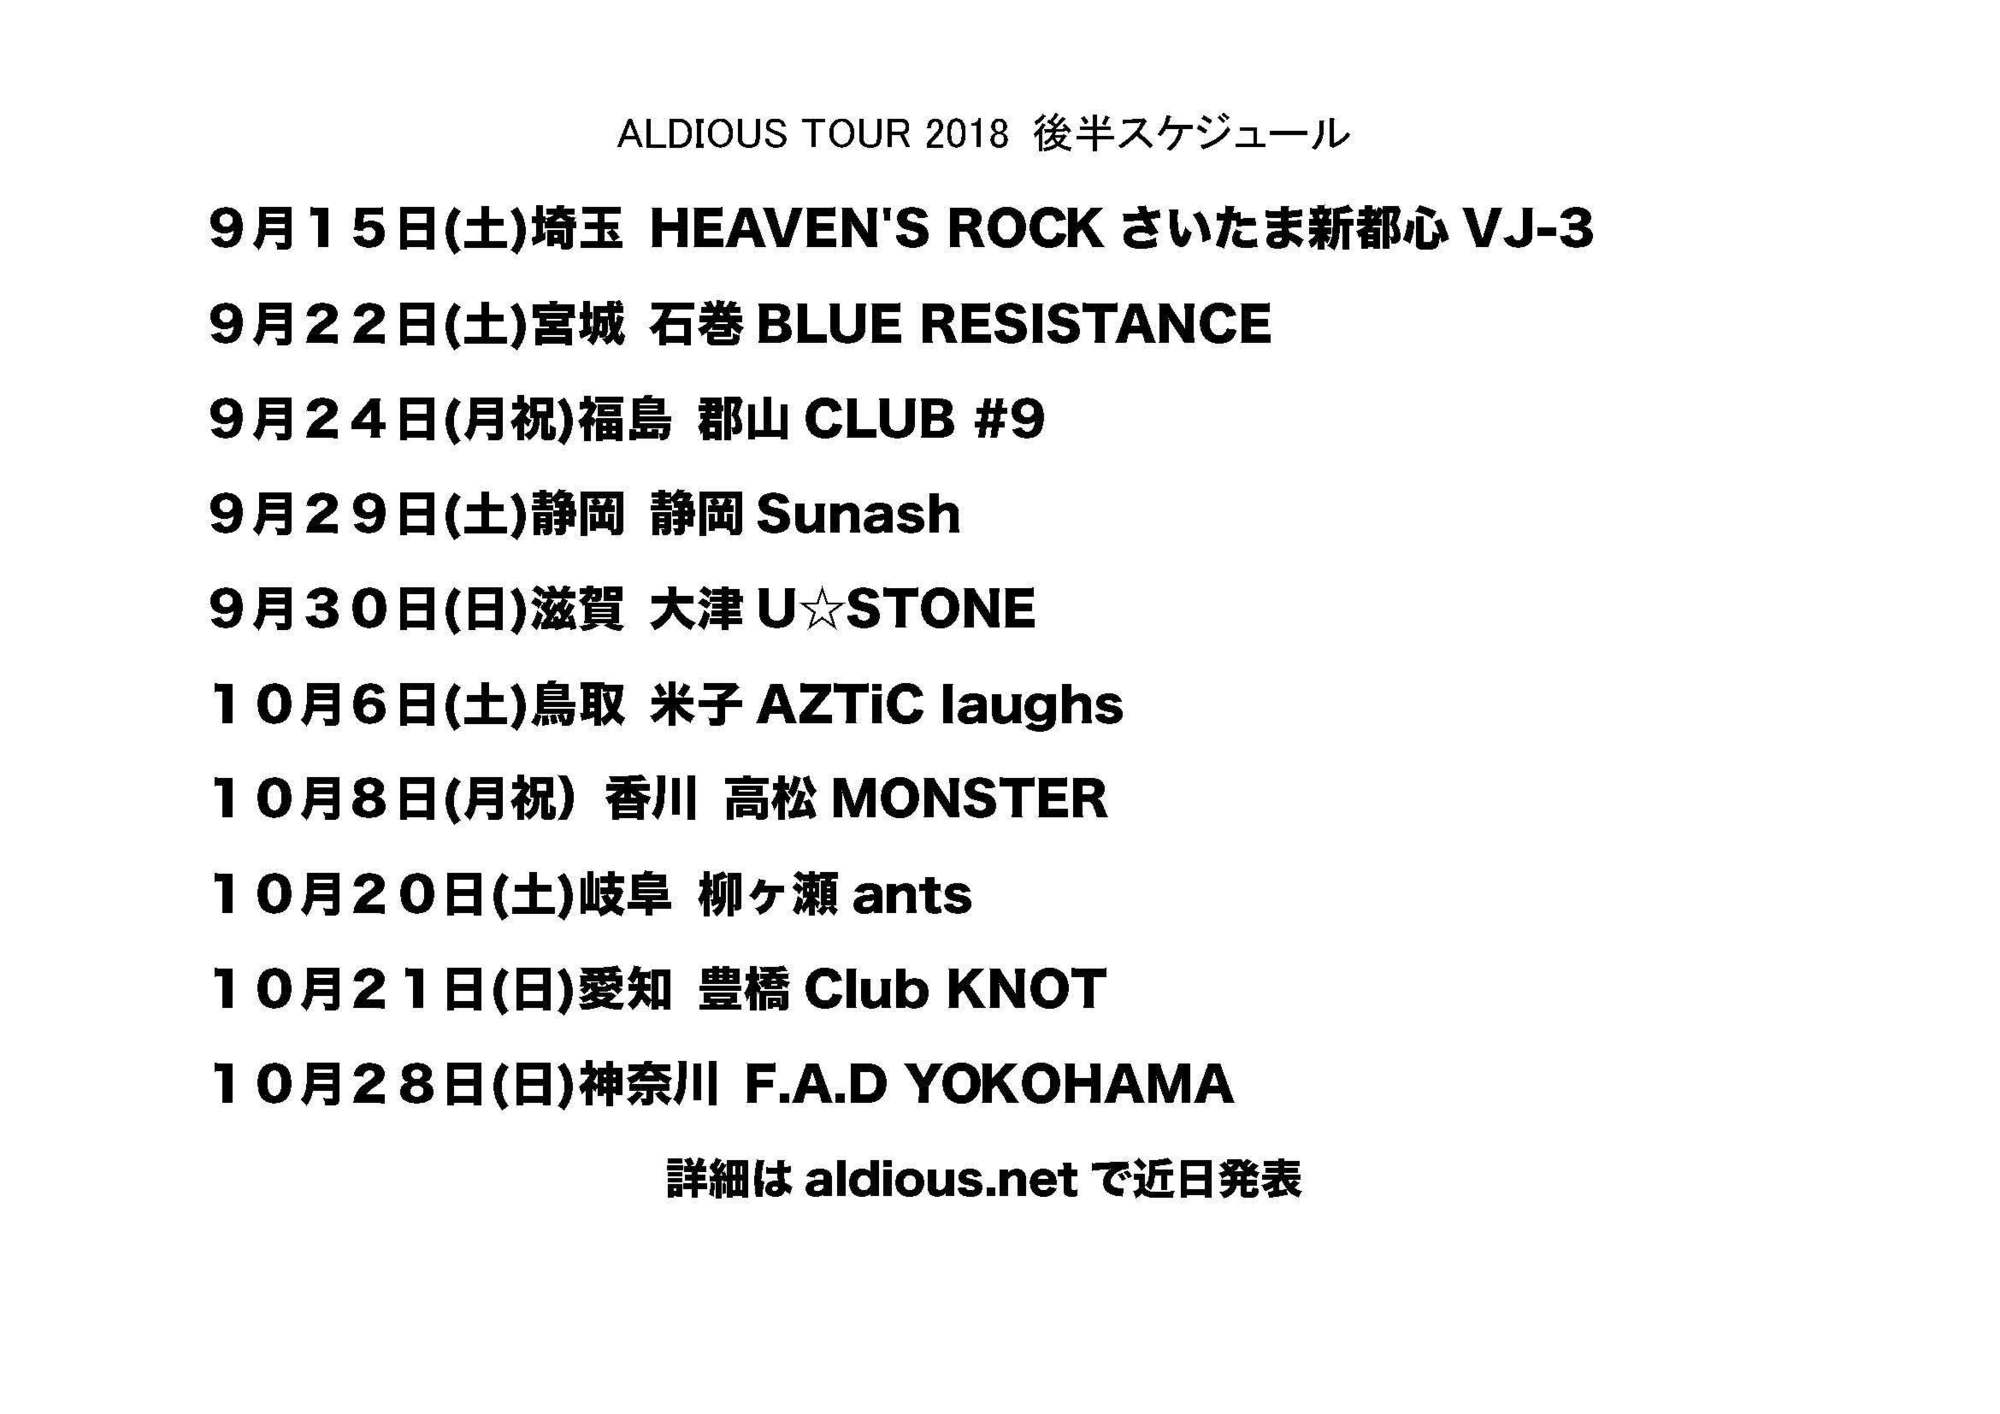 【FC限定版】Aldious aldious tour 2018 we are